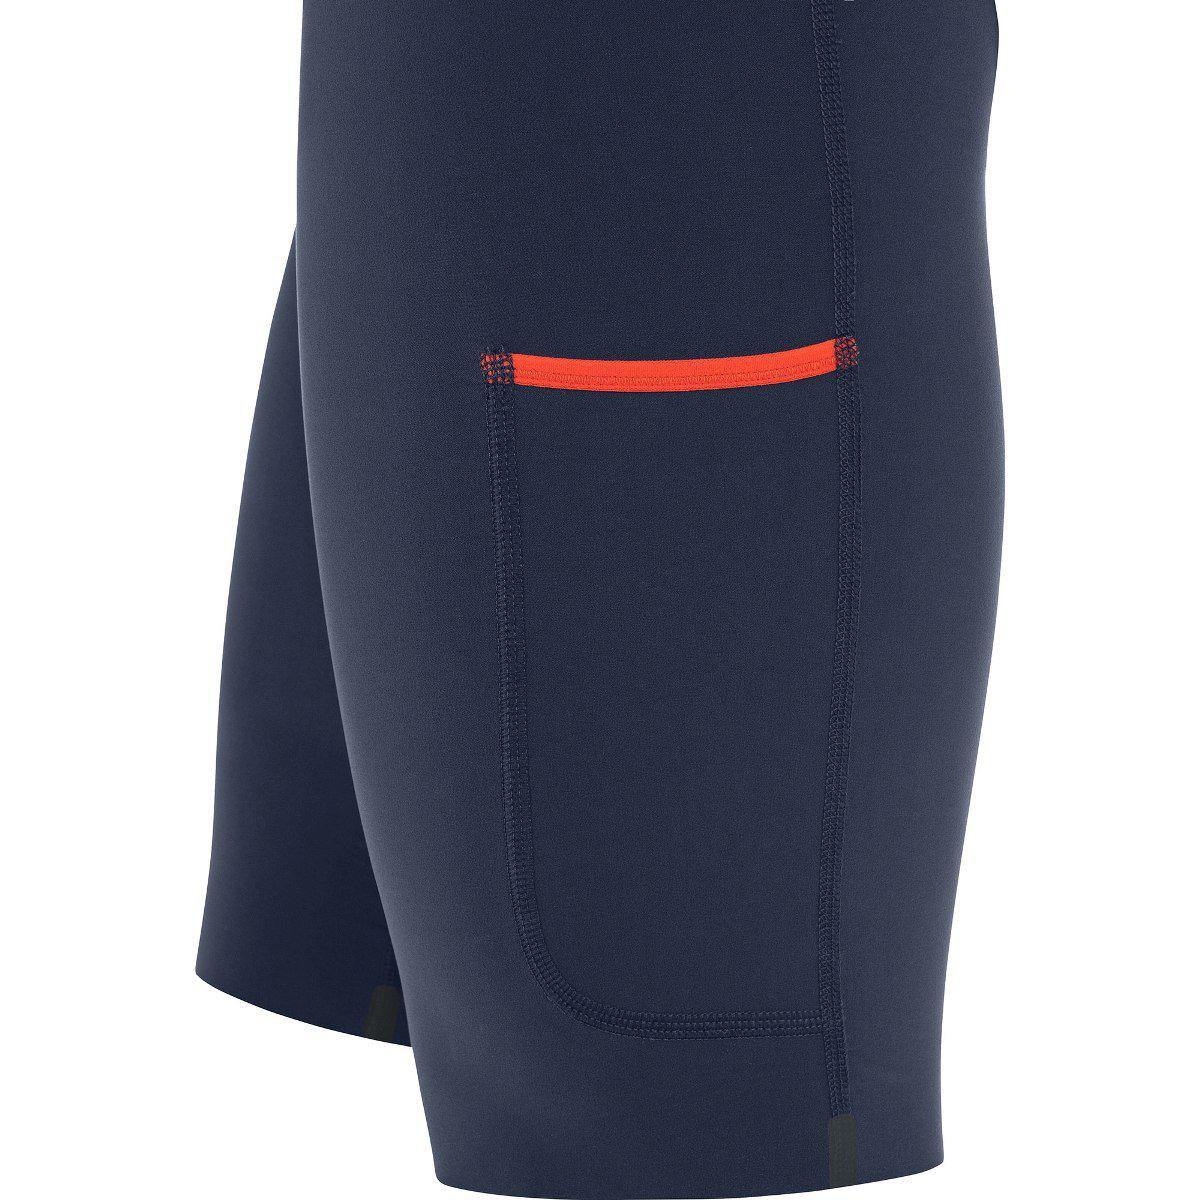 Gore Wear Ultimate 2 in 1 Shorts Fireball Orbit-Runster